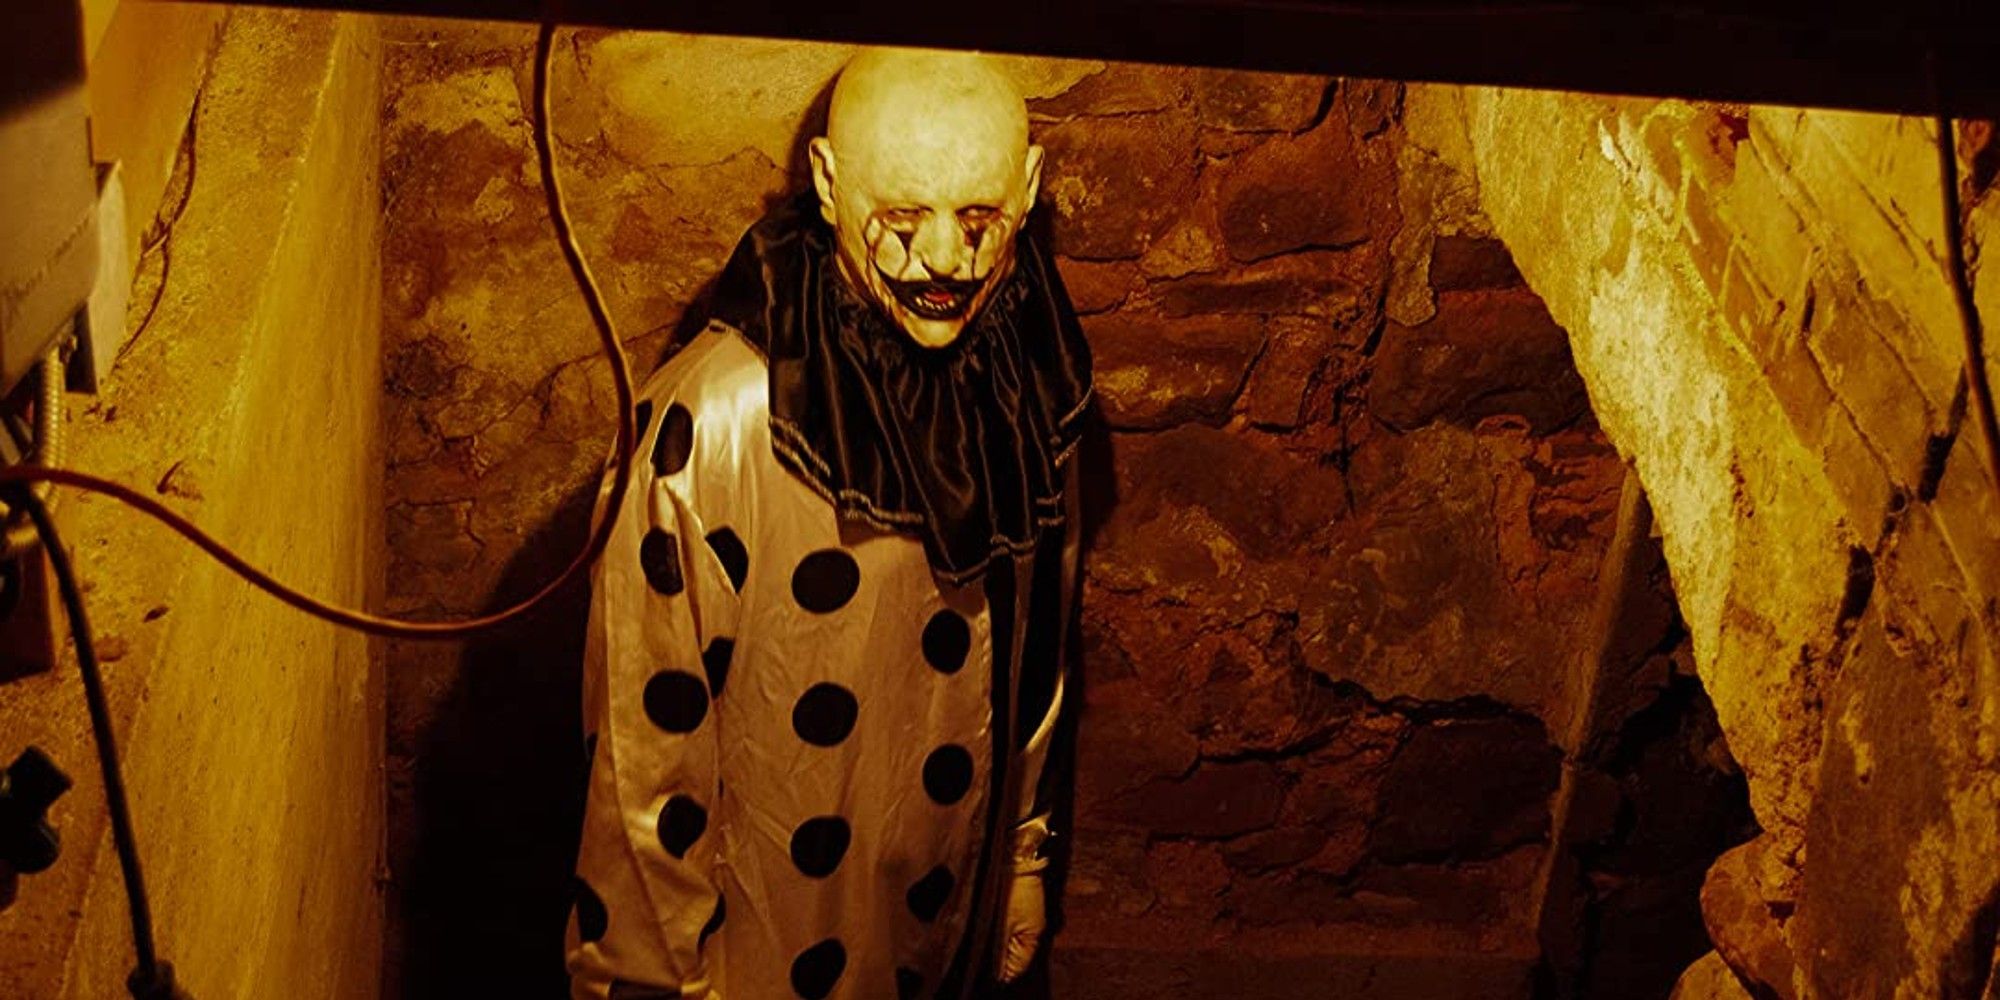 10 Worst Horror Movie Endings, According to Reddit